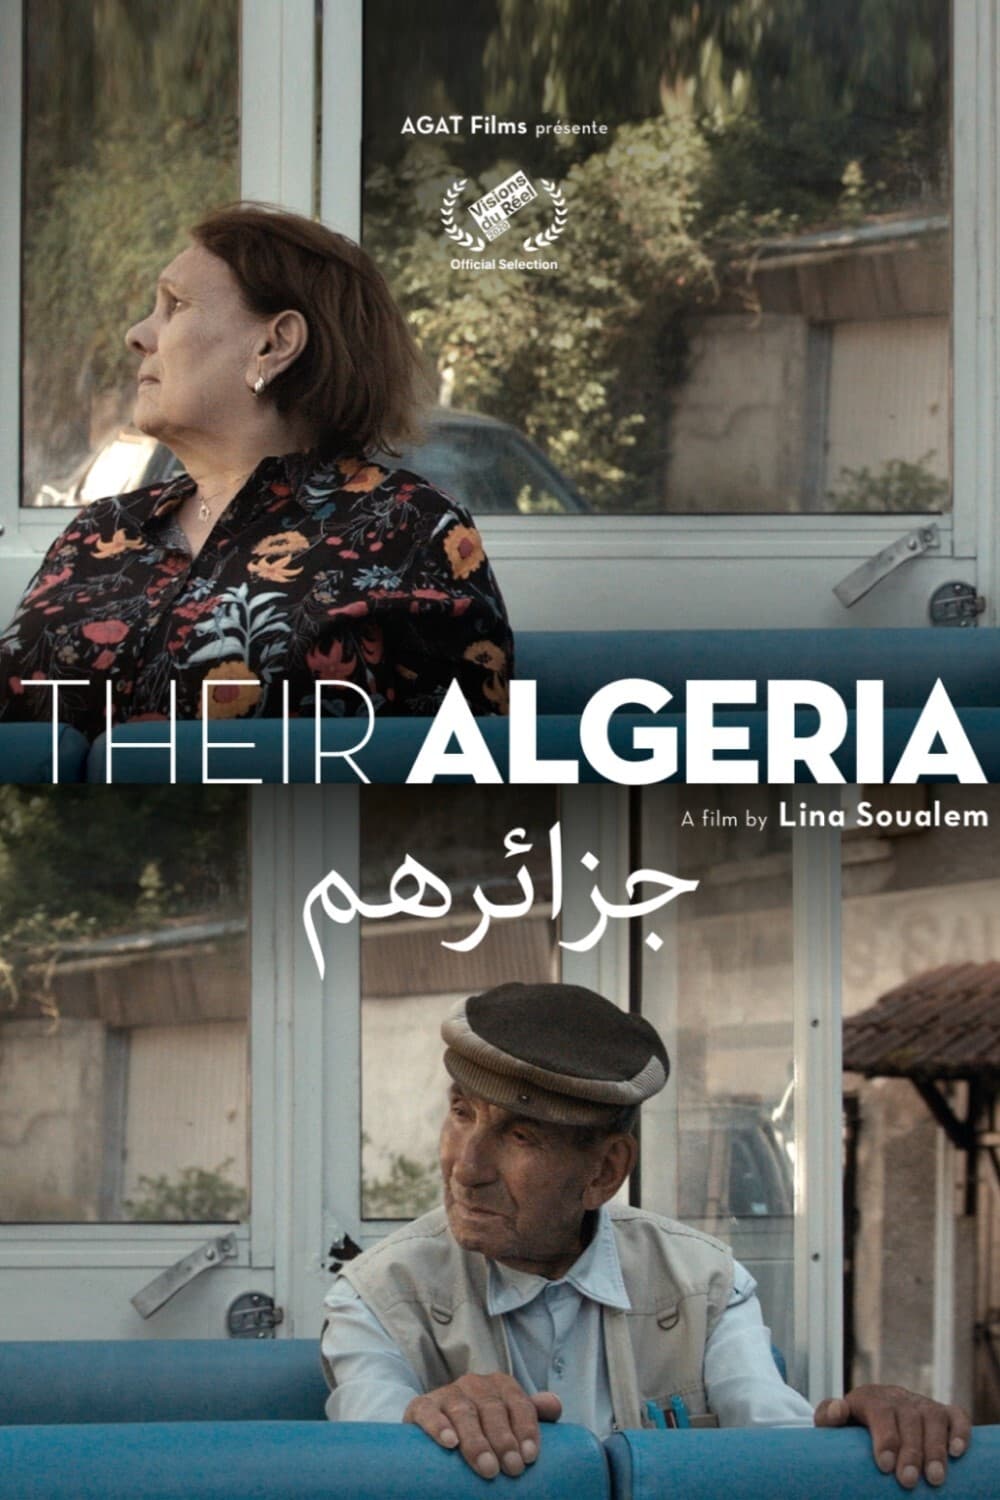 Their Algeria